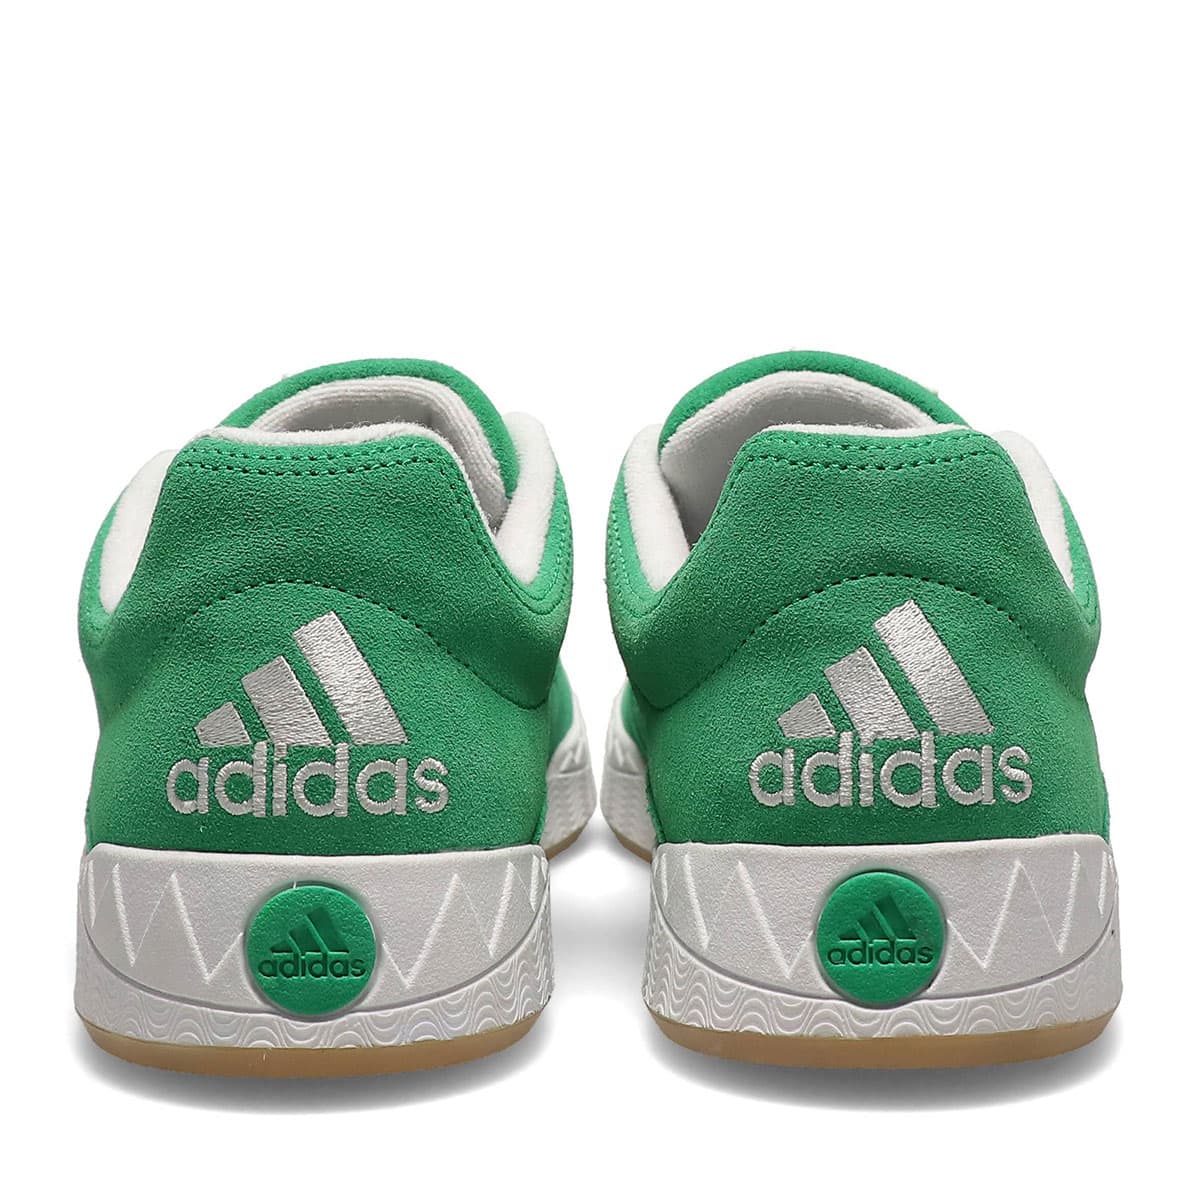 adidas Originals Adimatic "Green